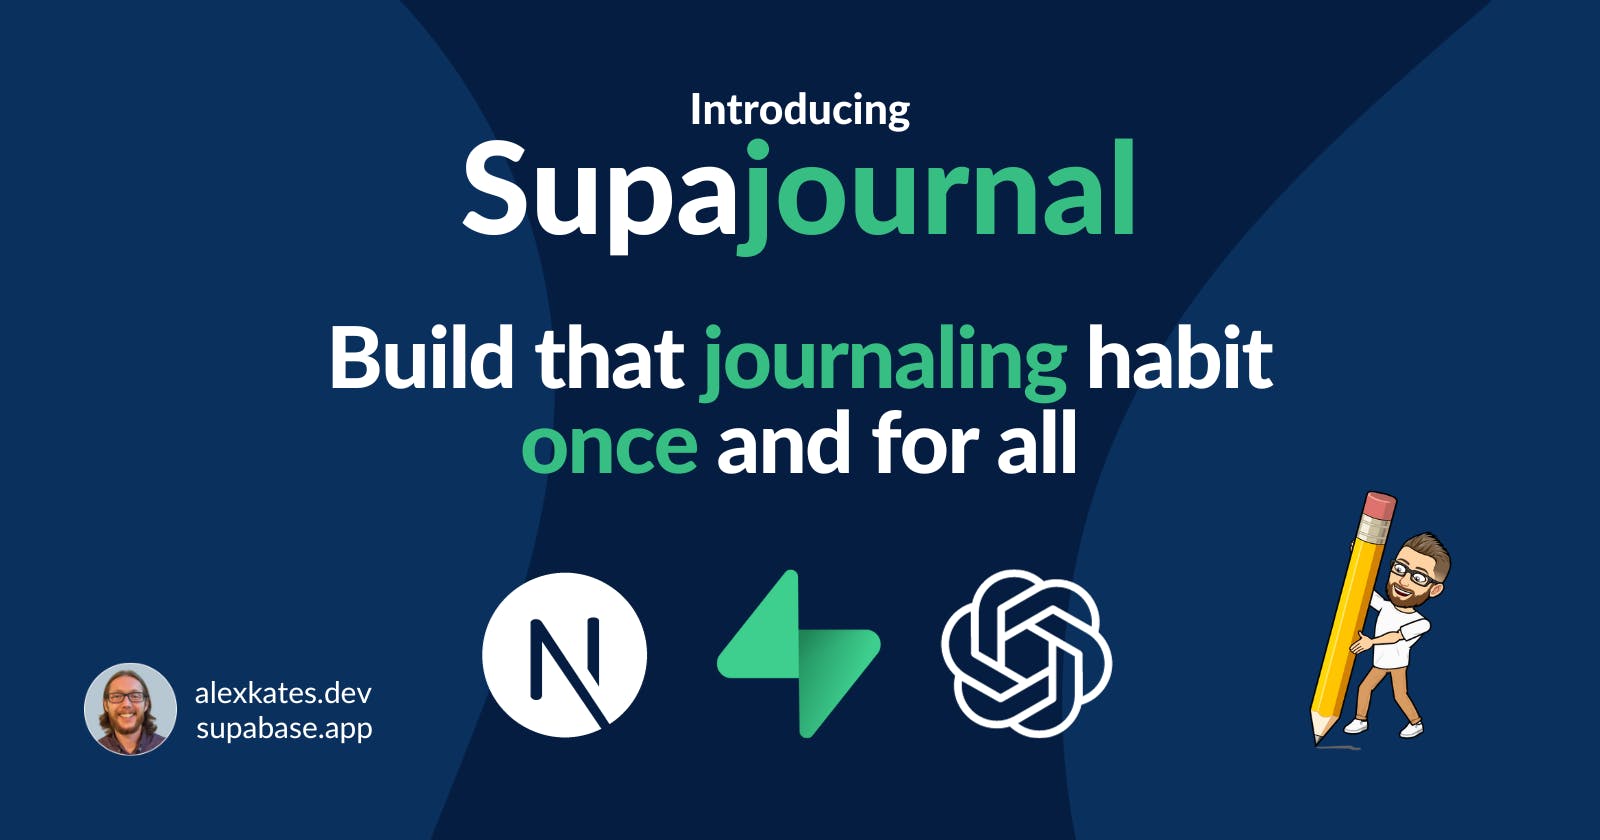 Introducing Supajournal